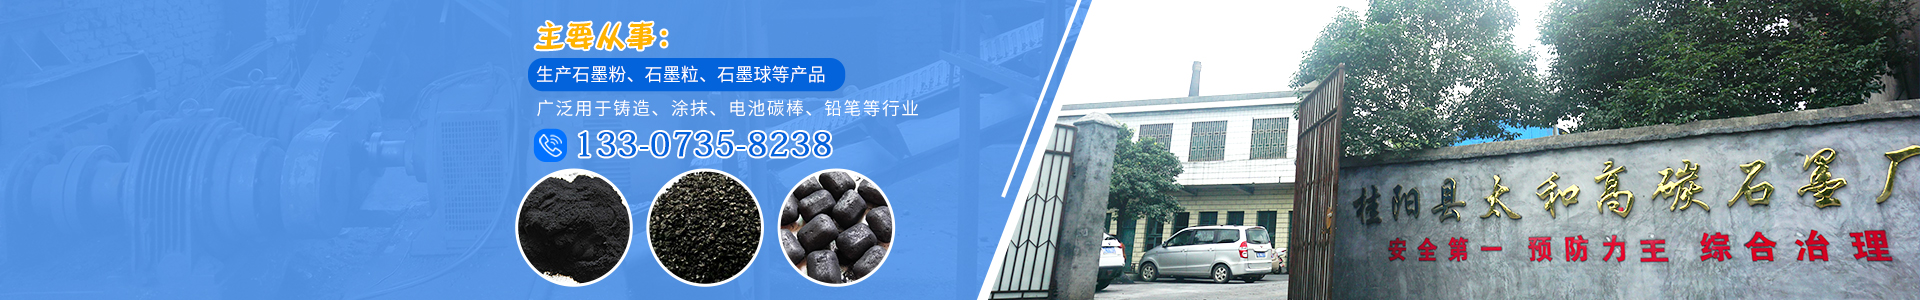 桂阳县太和高碳石墨厂_石墨粉生产|石墨粒生产|石墨球销售|石墨系列产品销售